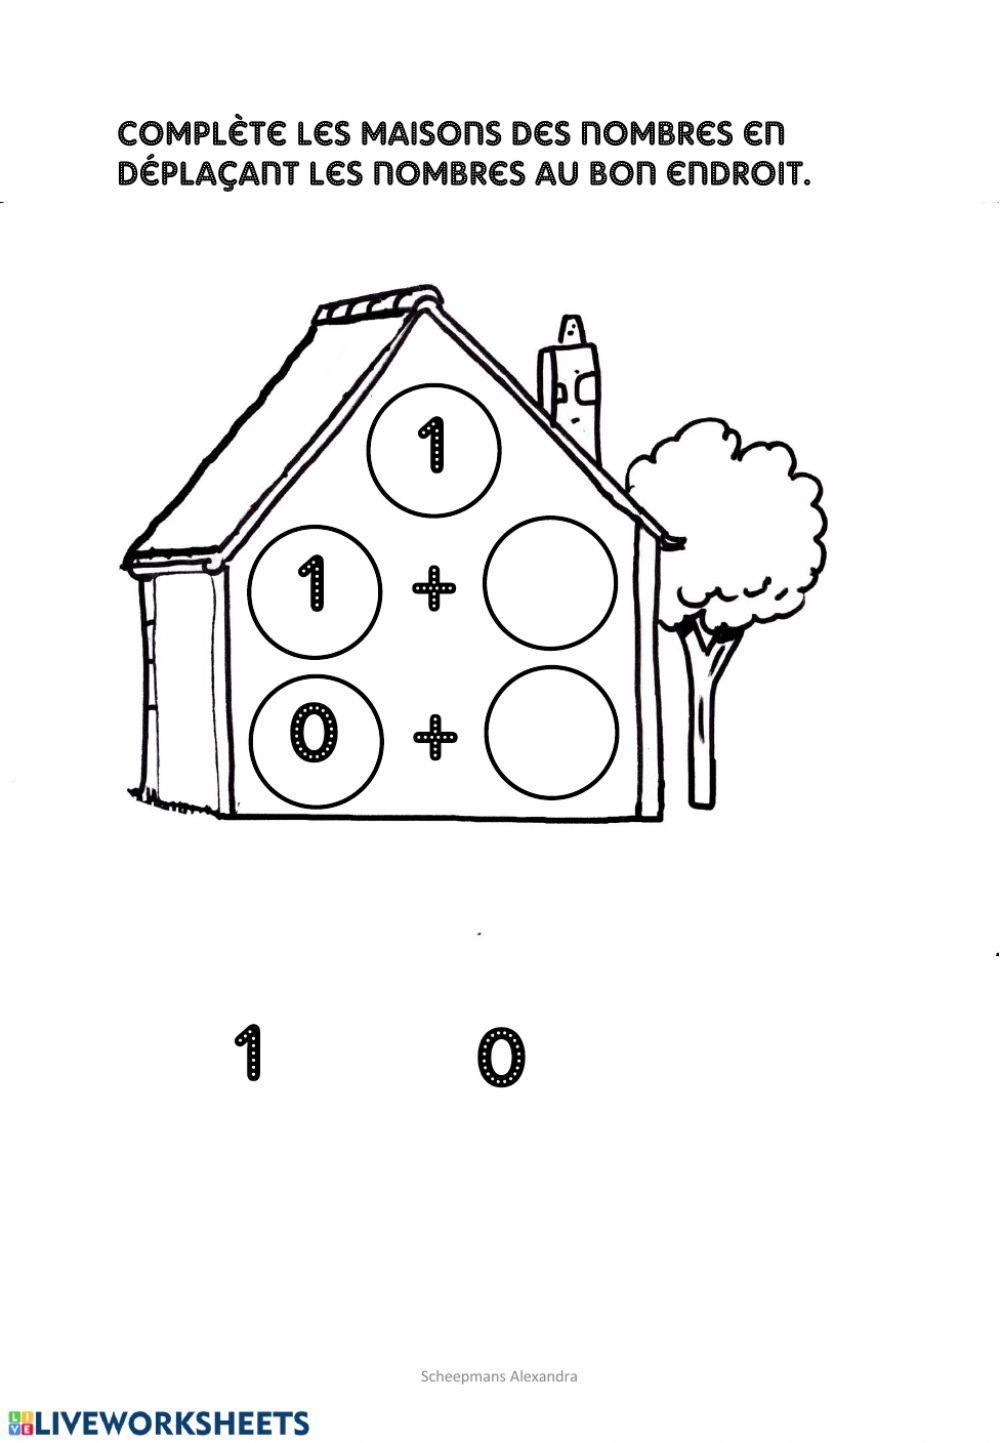 Les maisons des nombres